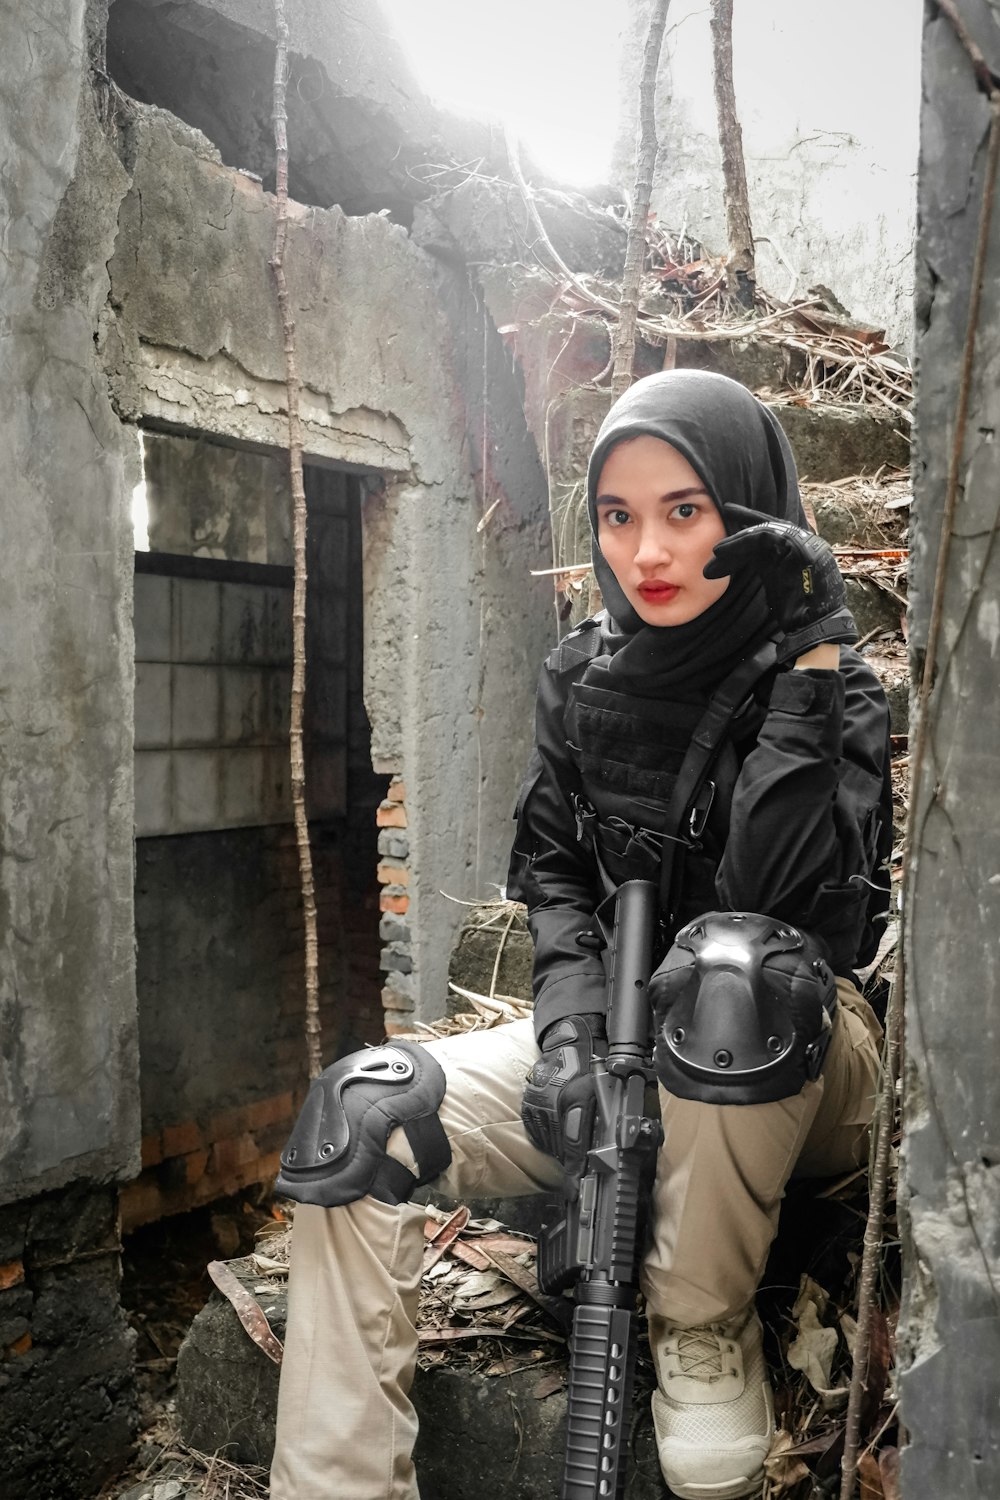 eine Person in einem schwarzen Kittel mit einer Waffe vor einem Steingebäude